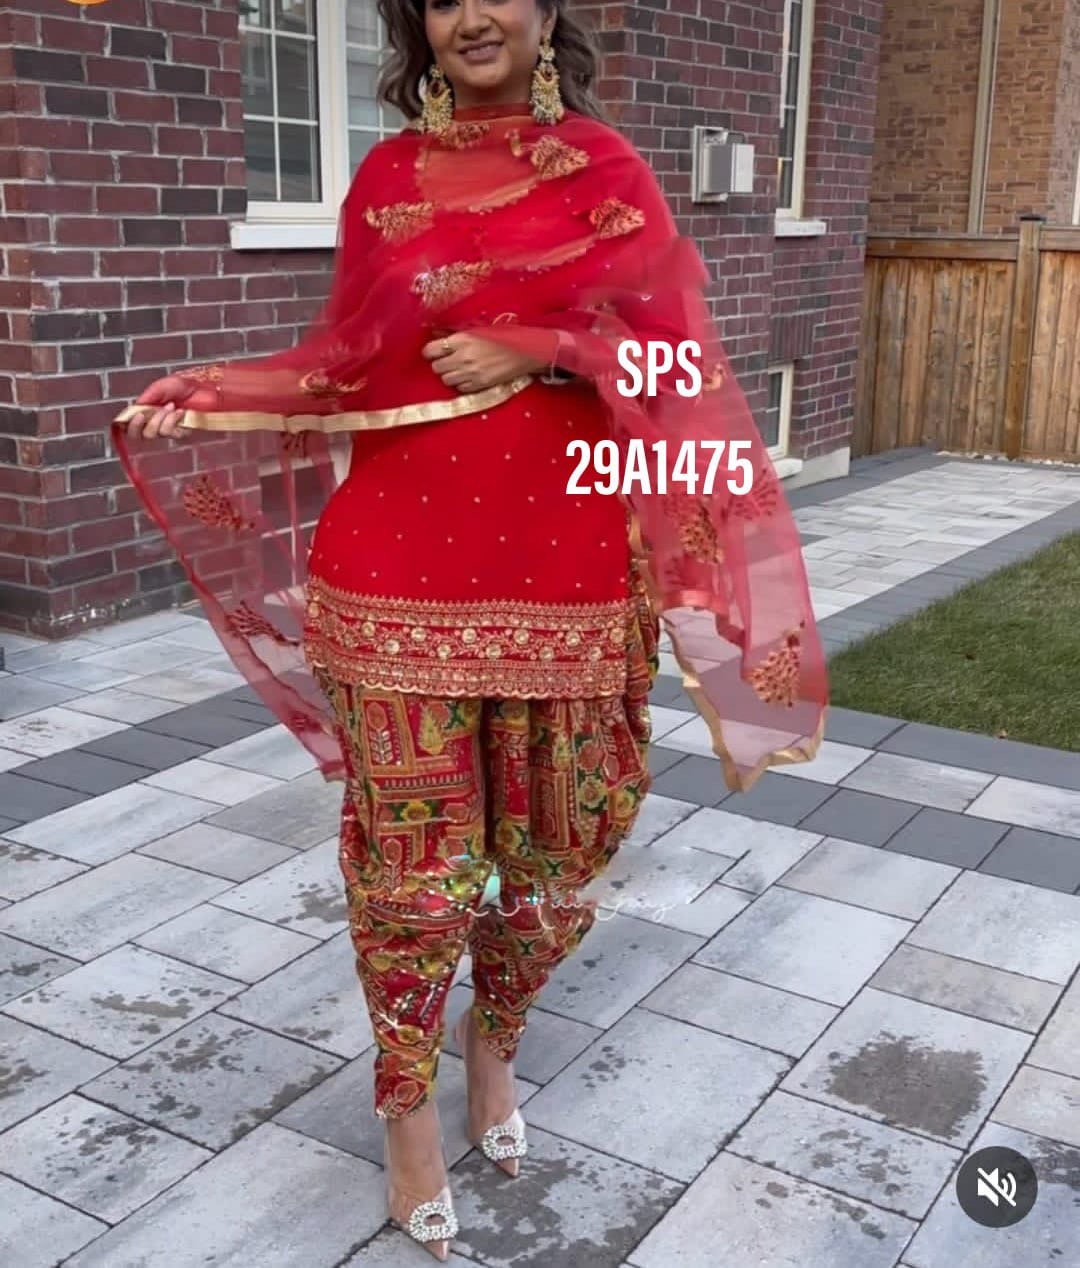 Punjabi Salwar Suit Ideas For Brides Trending This Wedding Season